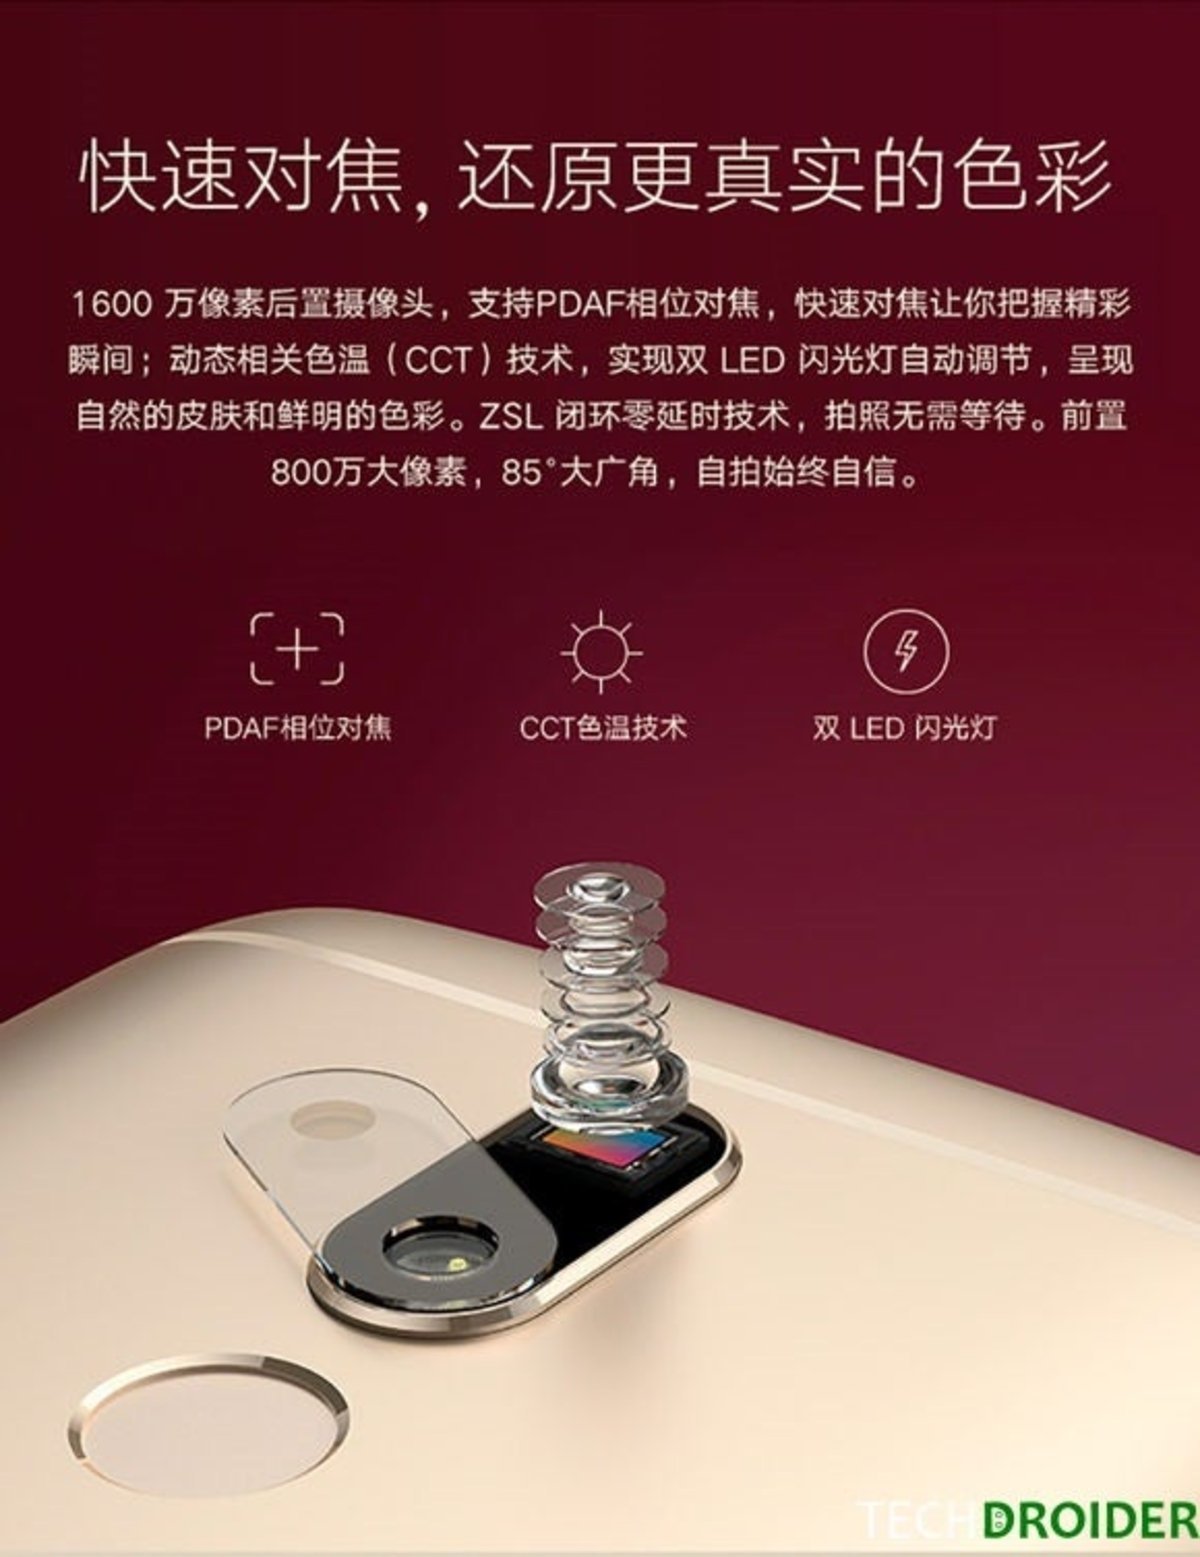 El Moto M aparece en imágenes oficiales que confirman su diseño y características